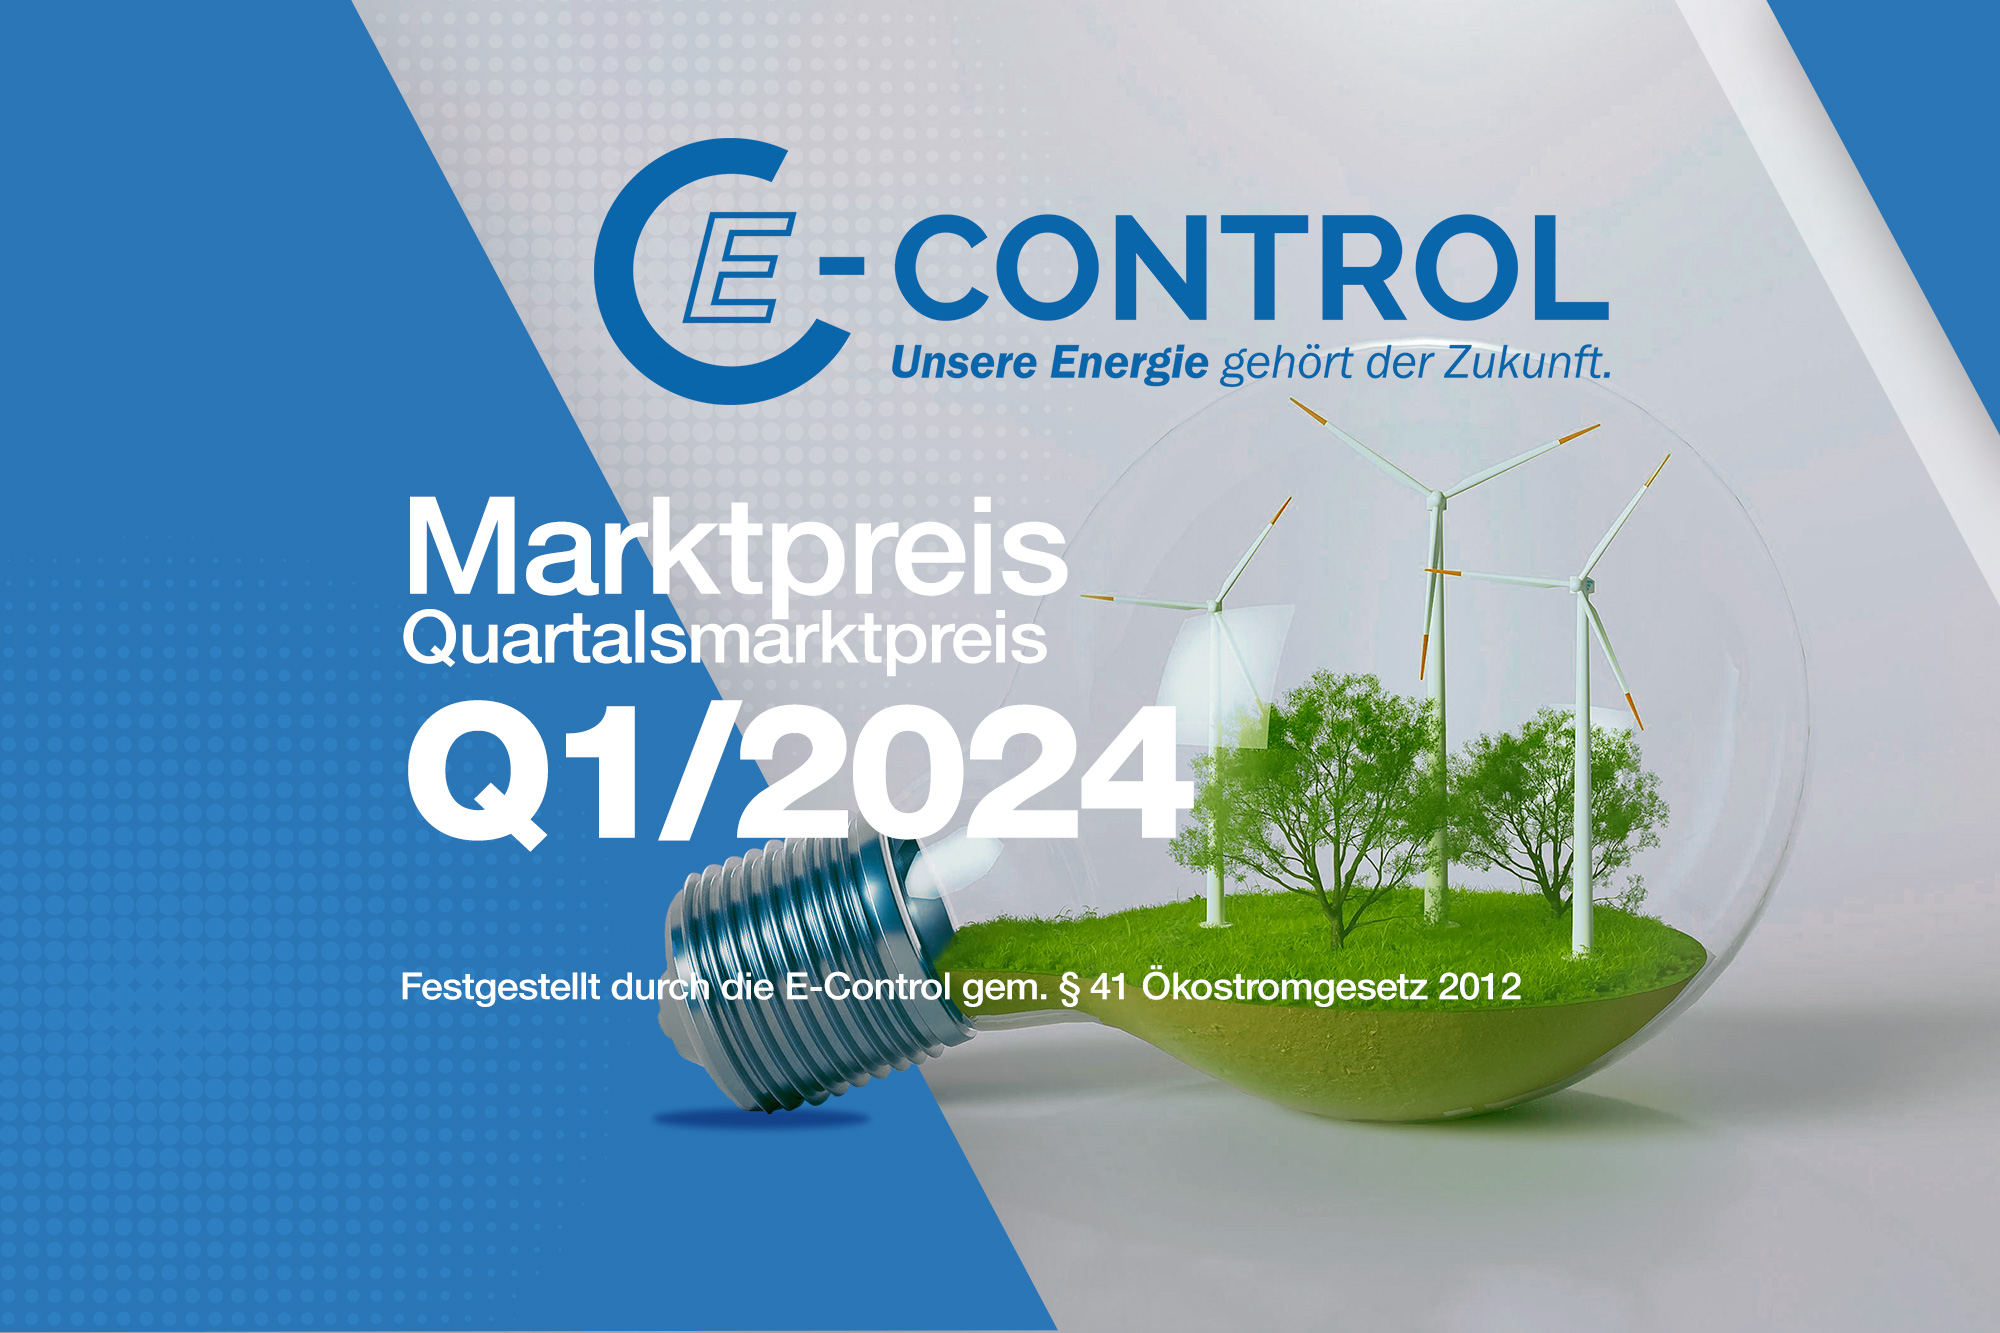 OeMAG Marktpreis Q1/2024 E-Control gem. § 41 Ökostromgesetz 2012